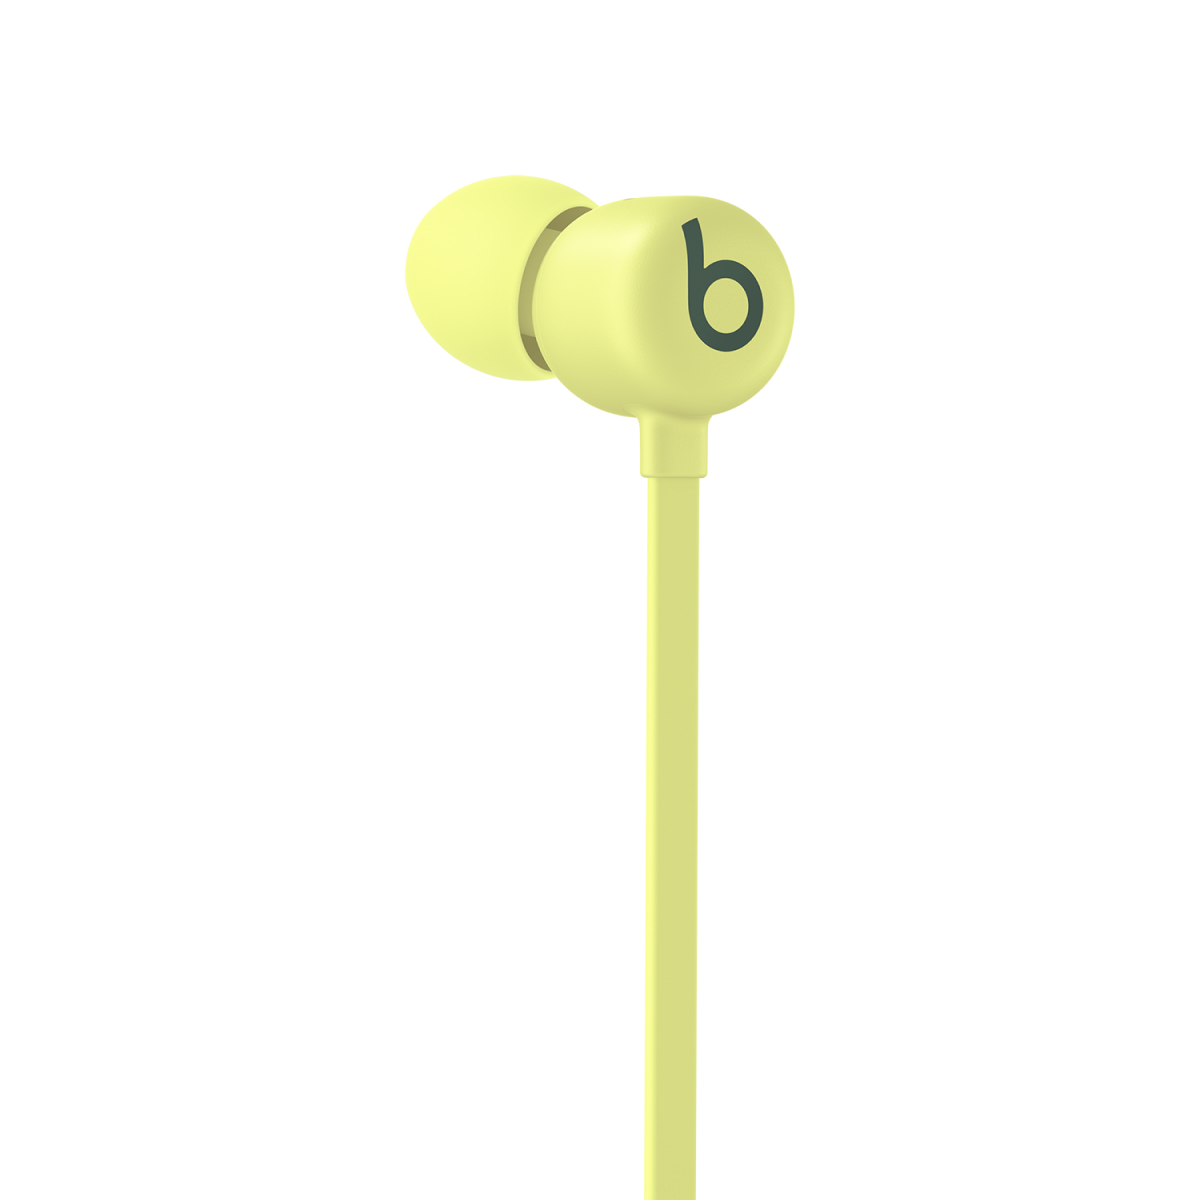 https://www.beatsbydre.com/content/dam/beats/web/product/earbuds/beats-flex/pdp/product-carousel/yuzu-yellow/pc-beats-flex-yuzu-yellow-earbuds-b-logo.jpg